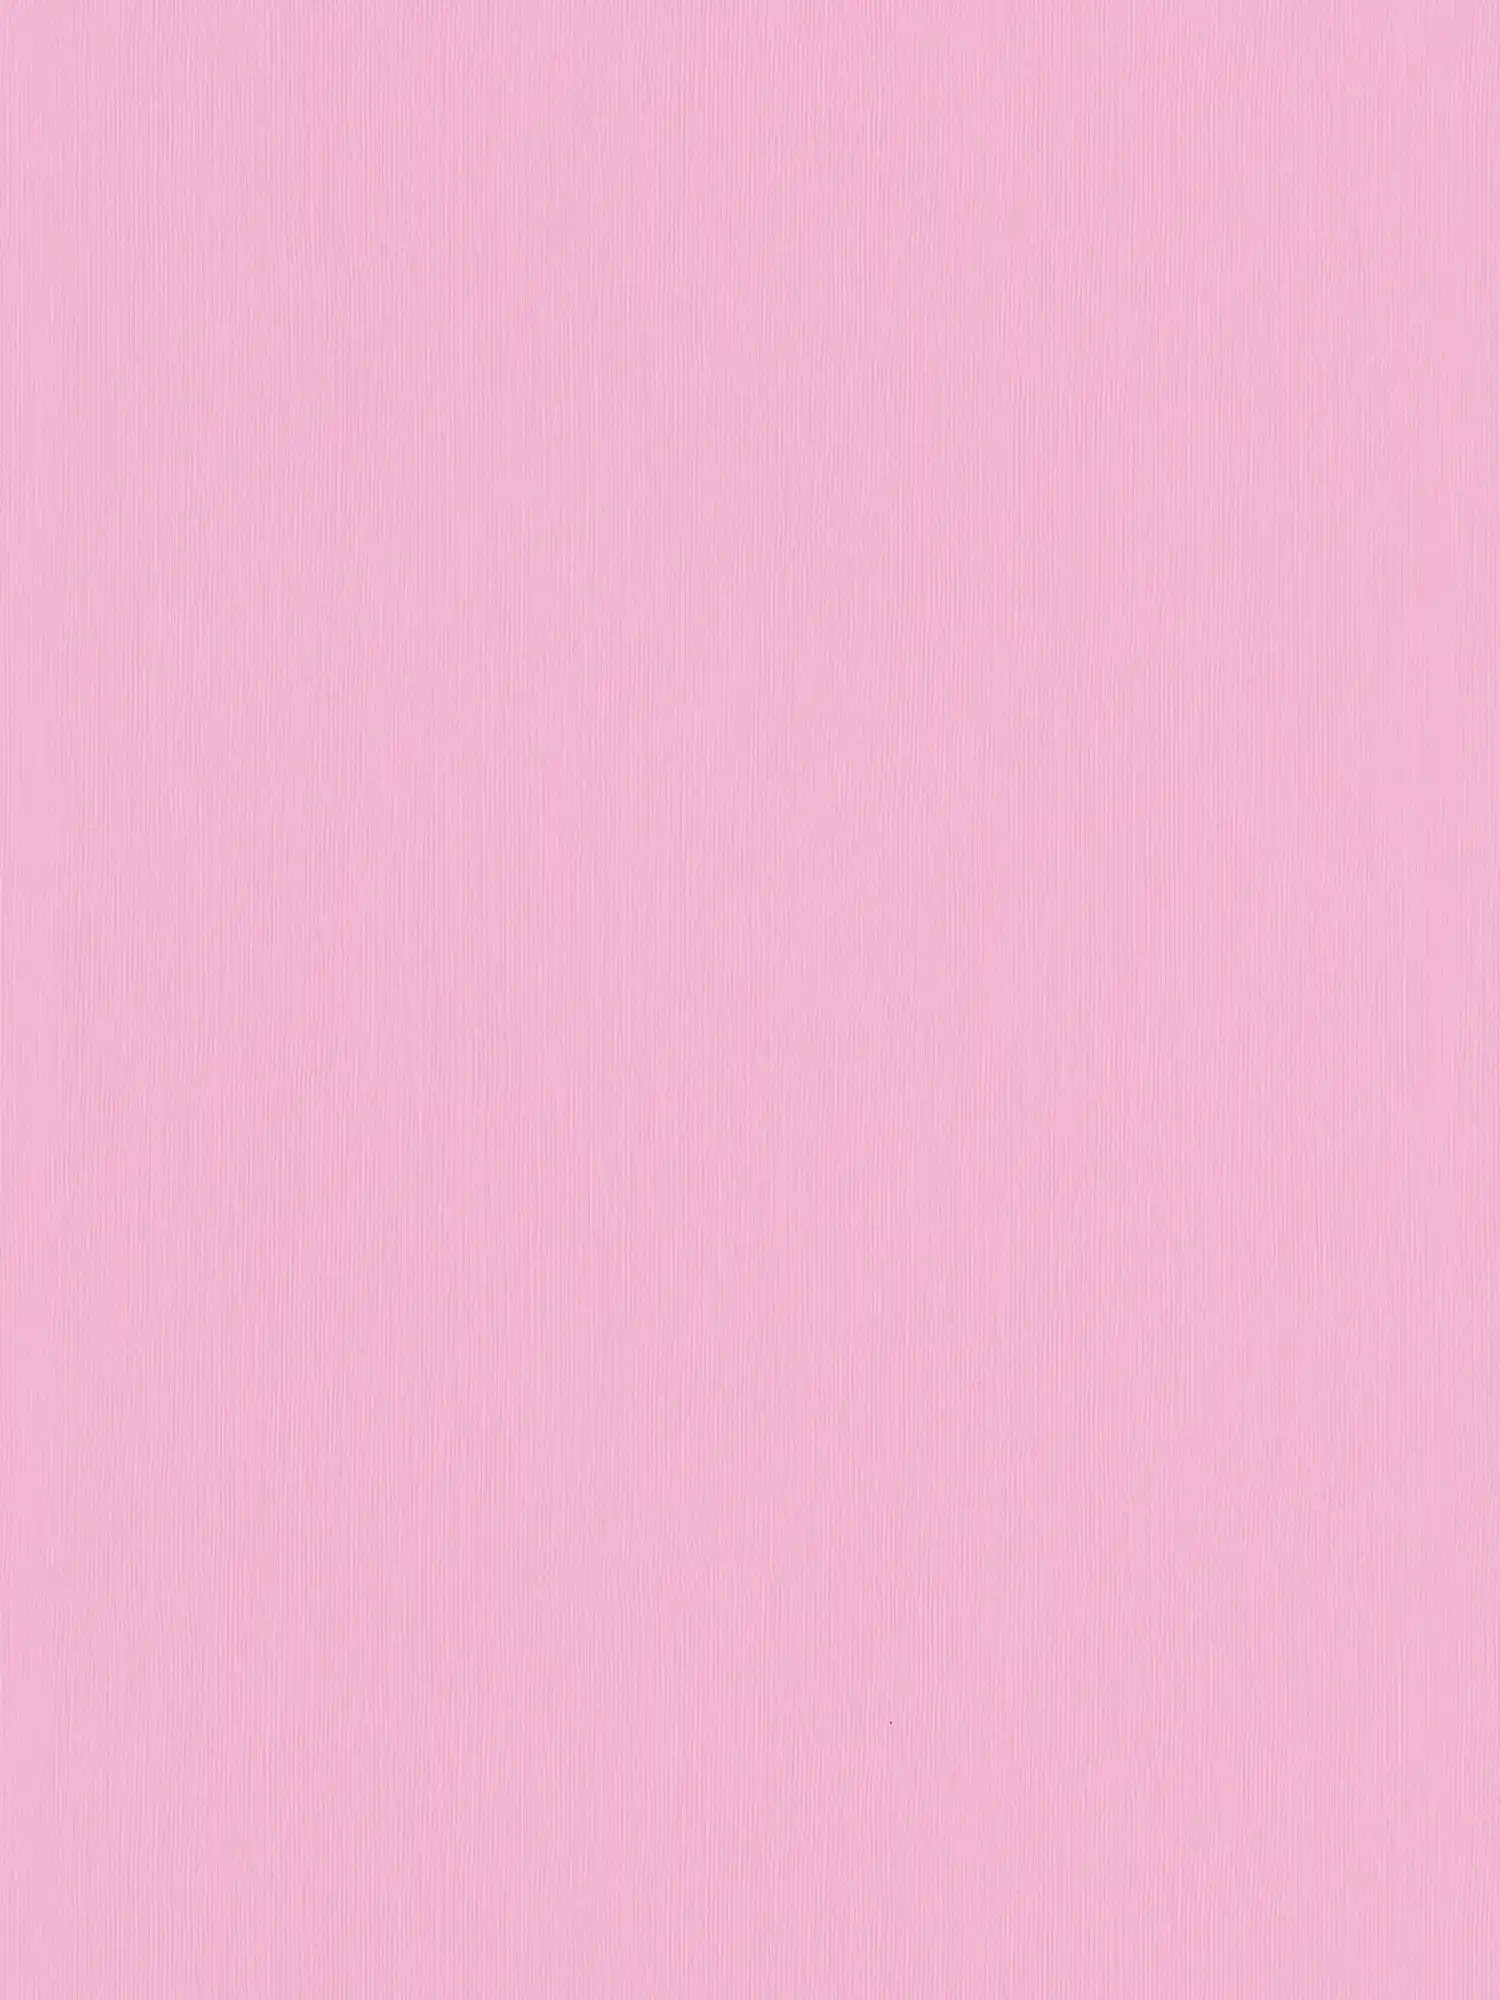 Papier peint rose uni avec structure gaufrée - rose
